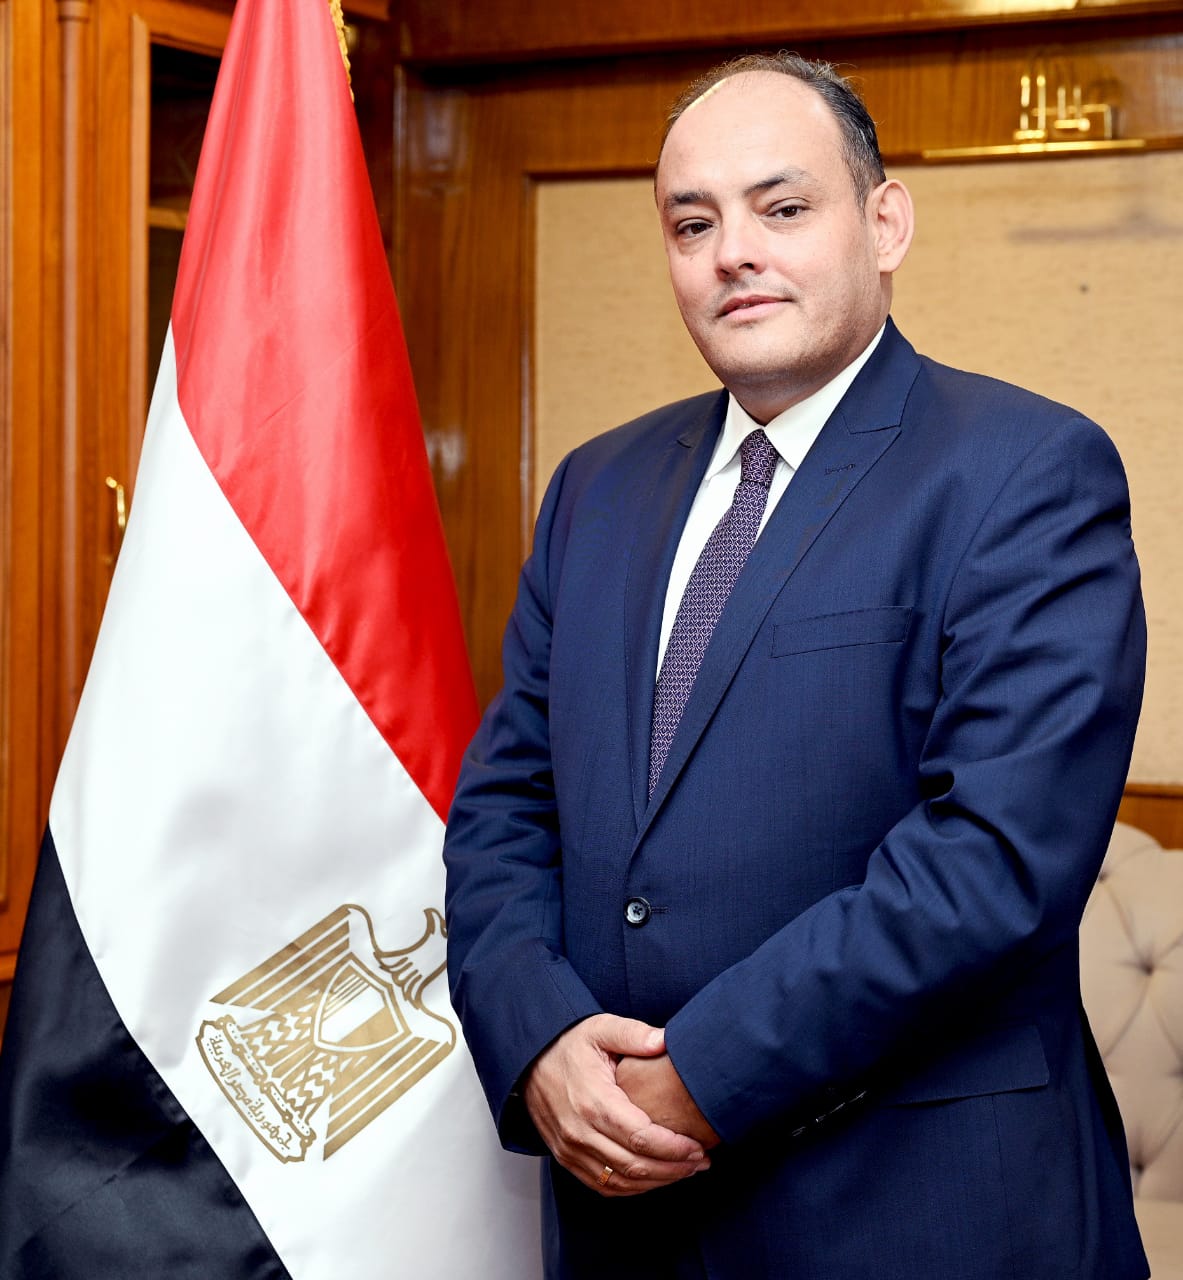 وزيرالصناعة: مشروع جديد لانتاج كومبروسر التكييف في مصر باستثمارات 33 مليون دولار وبطاقة انتاجية تبلغ 6 مليون وحدة سنوياً  